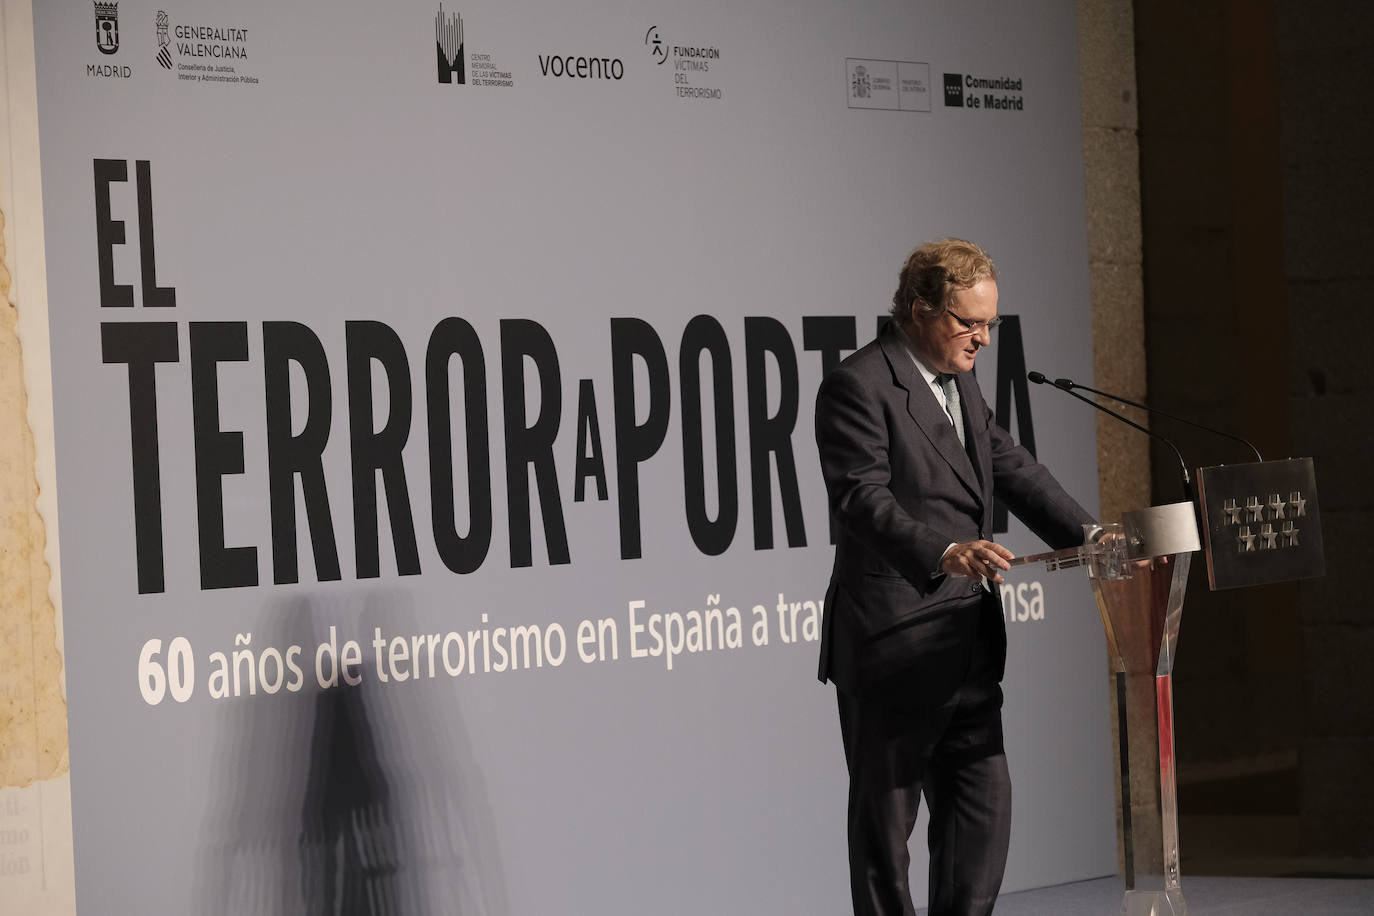 El presidente de Vocento, Ignacio Ybarra Aznar, en su intervención en el acto inaugural de la exposición.